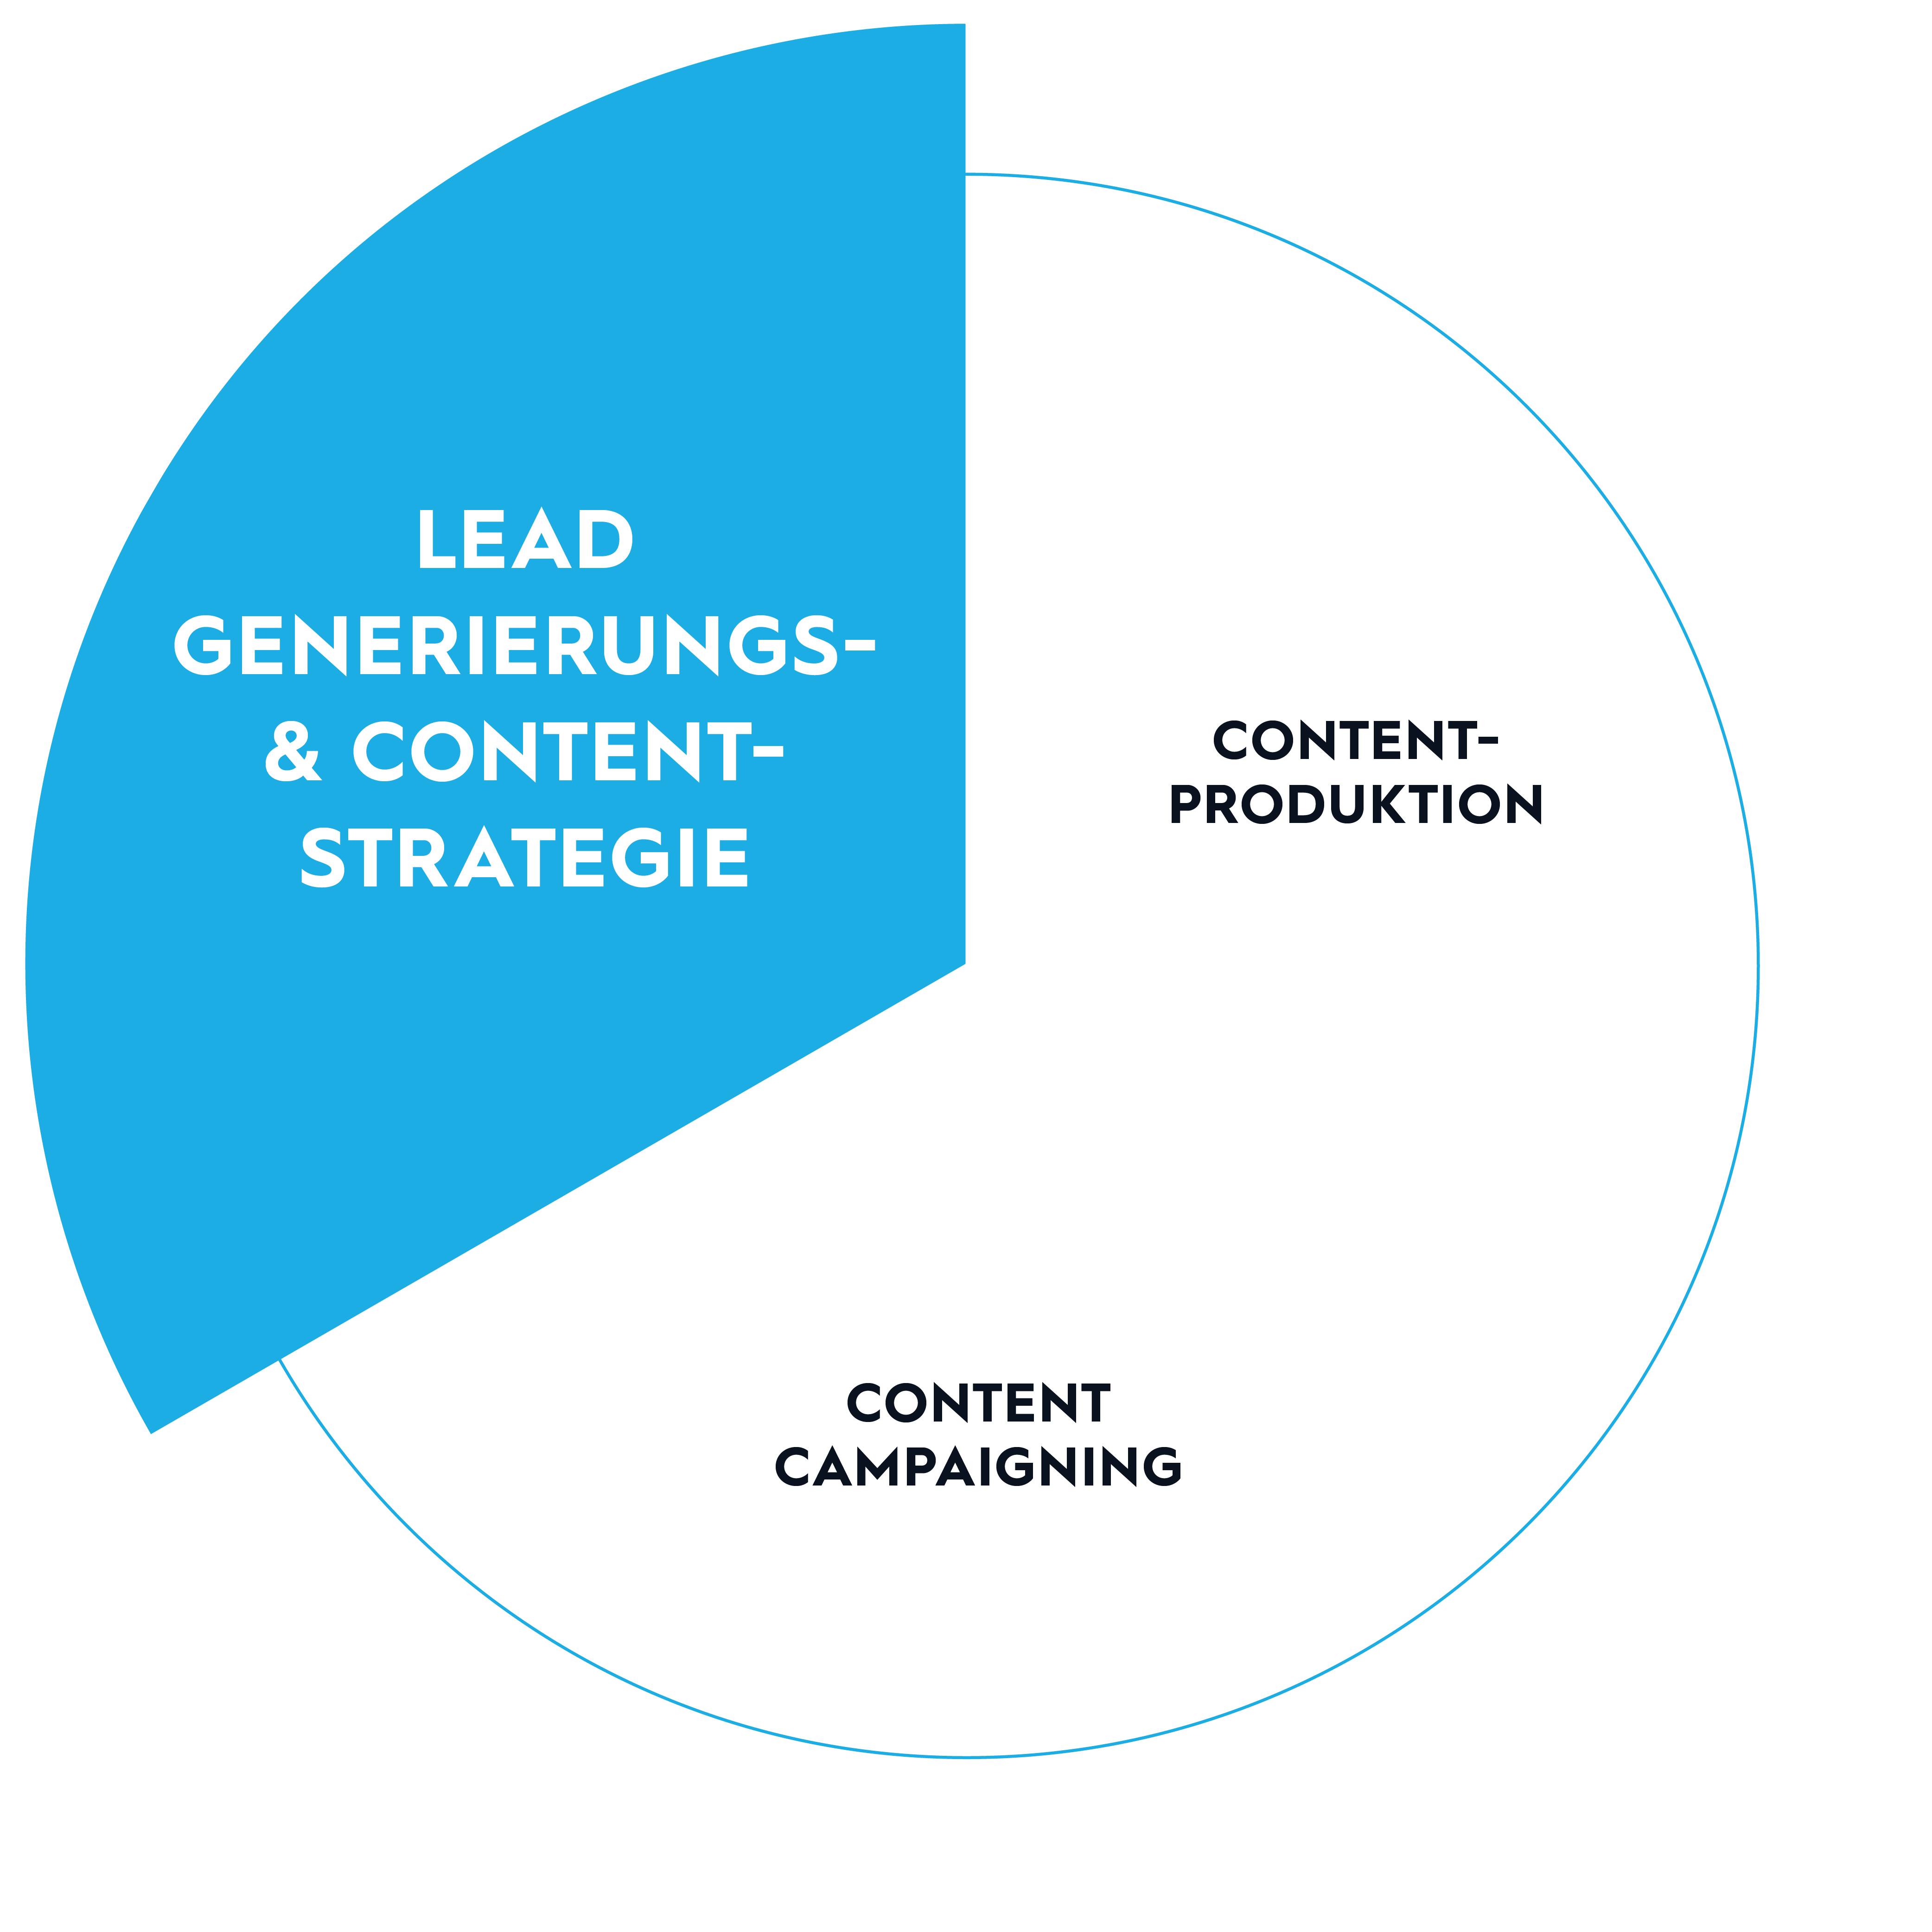 Leadgenerierungs- & Contentstrategie